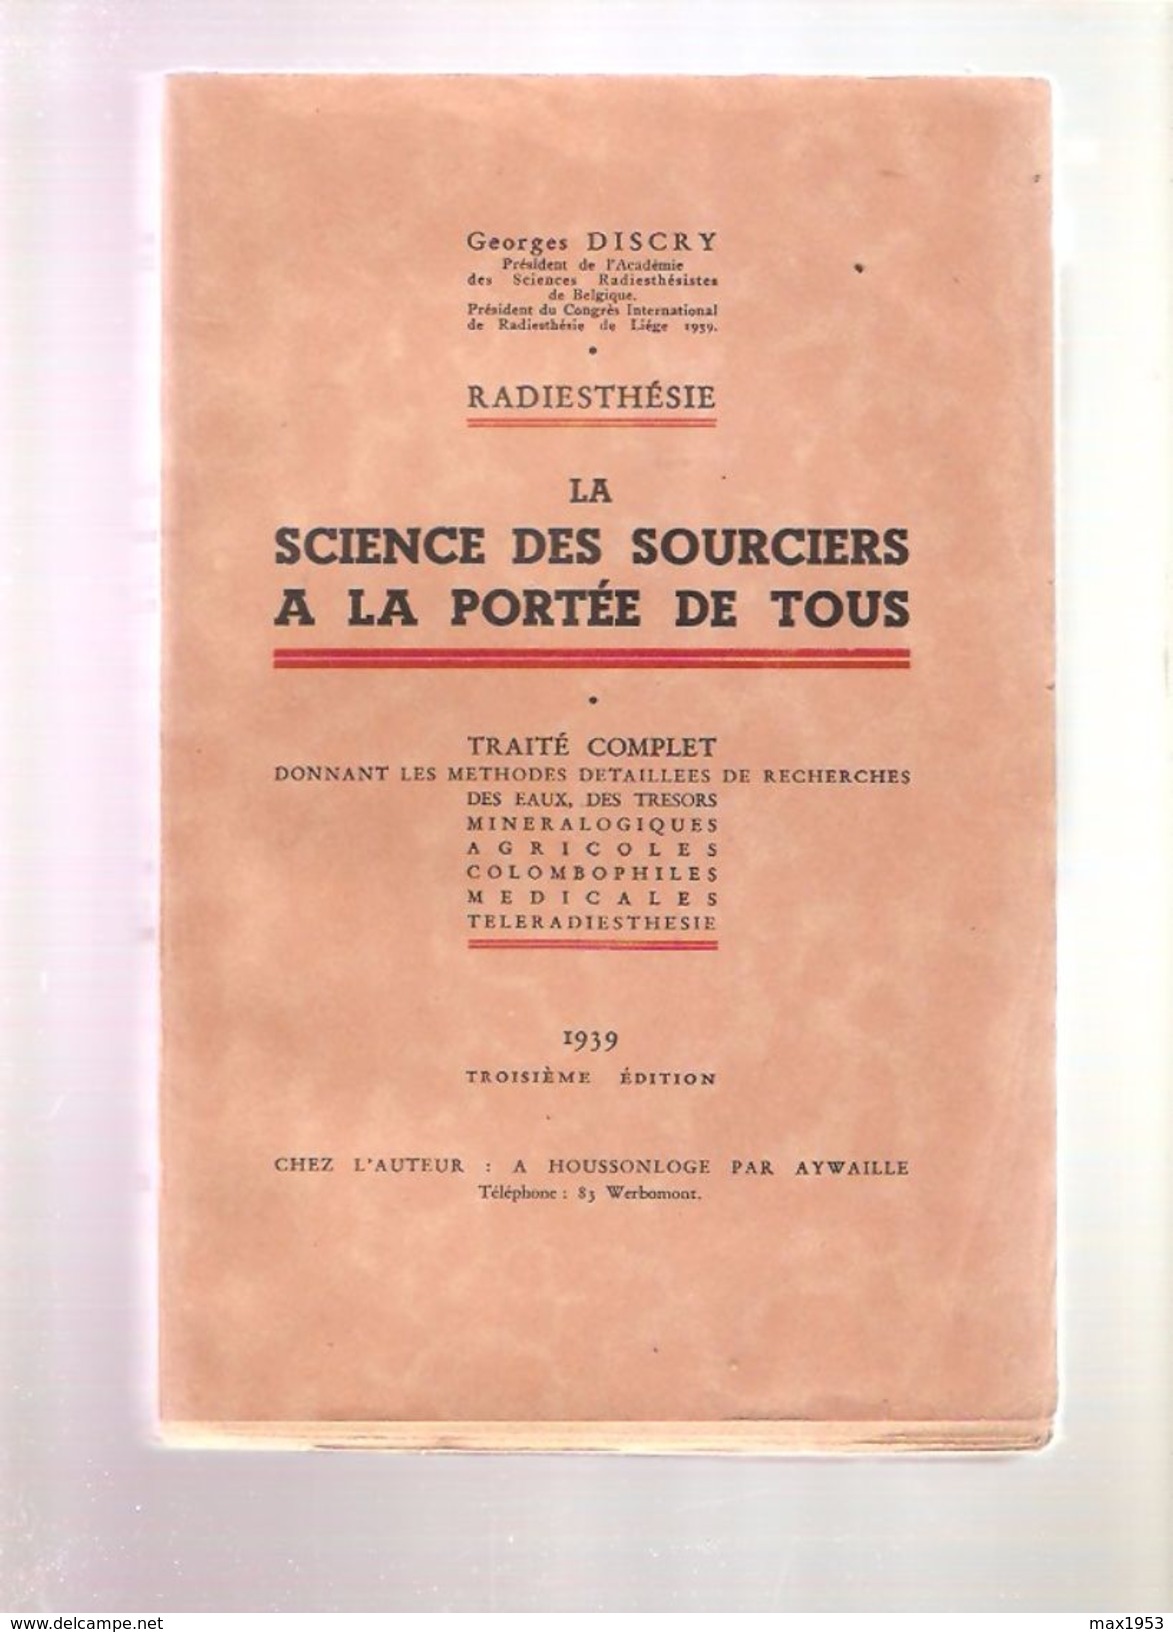 Georges DISCRY - RADIESTHESIE LA SCIENCE DES SOURCIERS A LA PORTEE DE TOUS - Chez L'Auteur , Houssonloge, 1939 - Esoterik